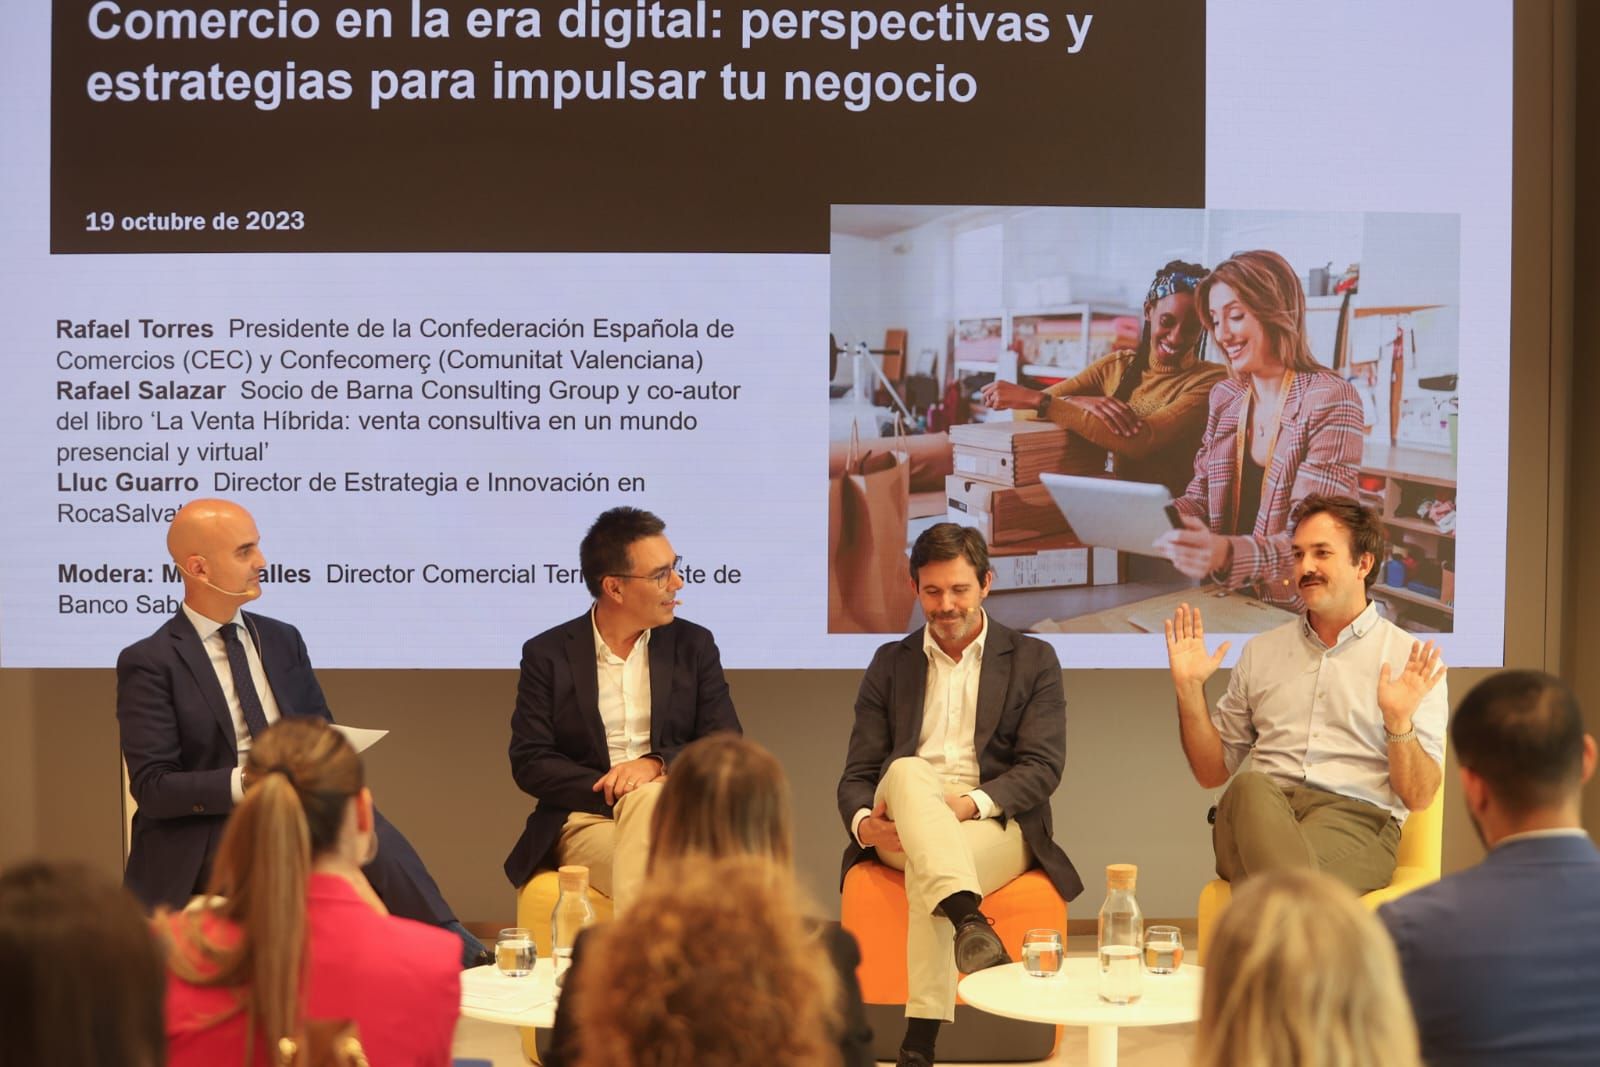 Mesa redonda del Sabadell: "Comercio en la era digital: perspectivas y estrategias para impulsar tu negocio"